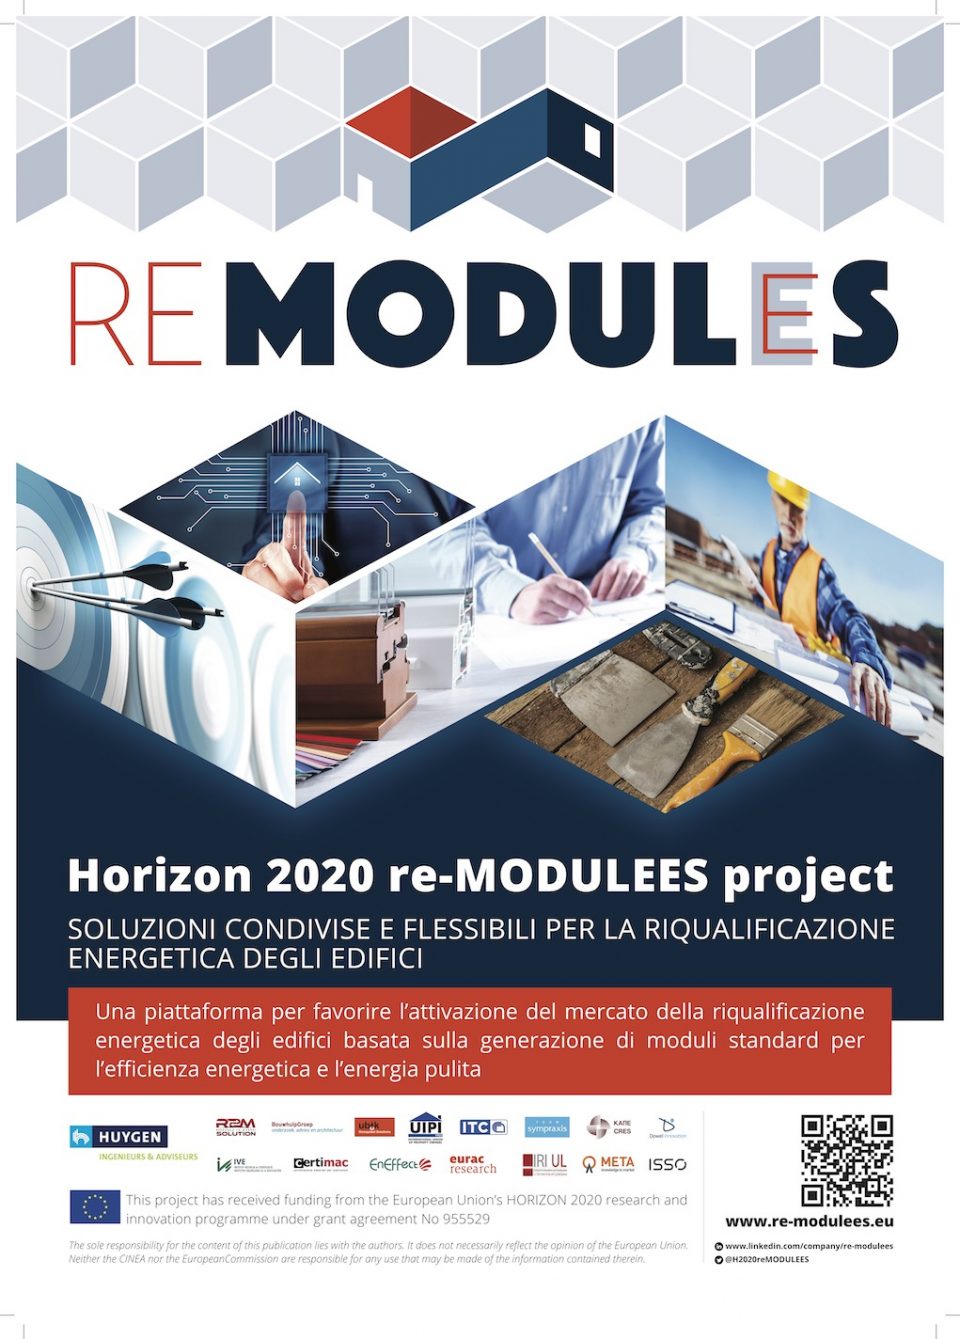 (Italiano) Progetto Horizon 2020 re-MODULEES, i partner descrivono il contesto, il concetto, gli obiettivi e le ambizioni del progetto.